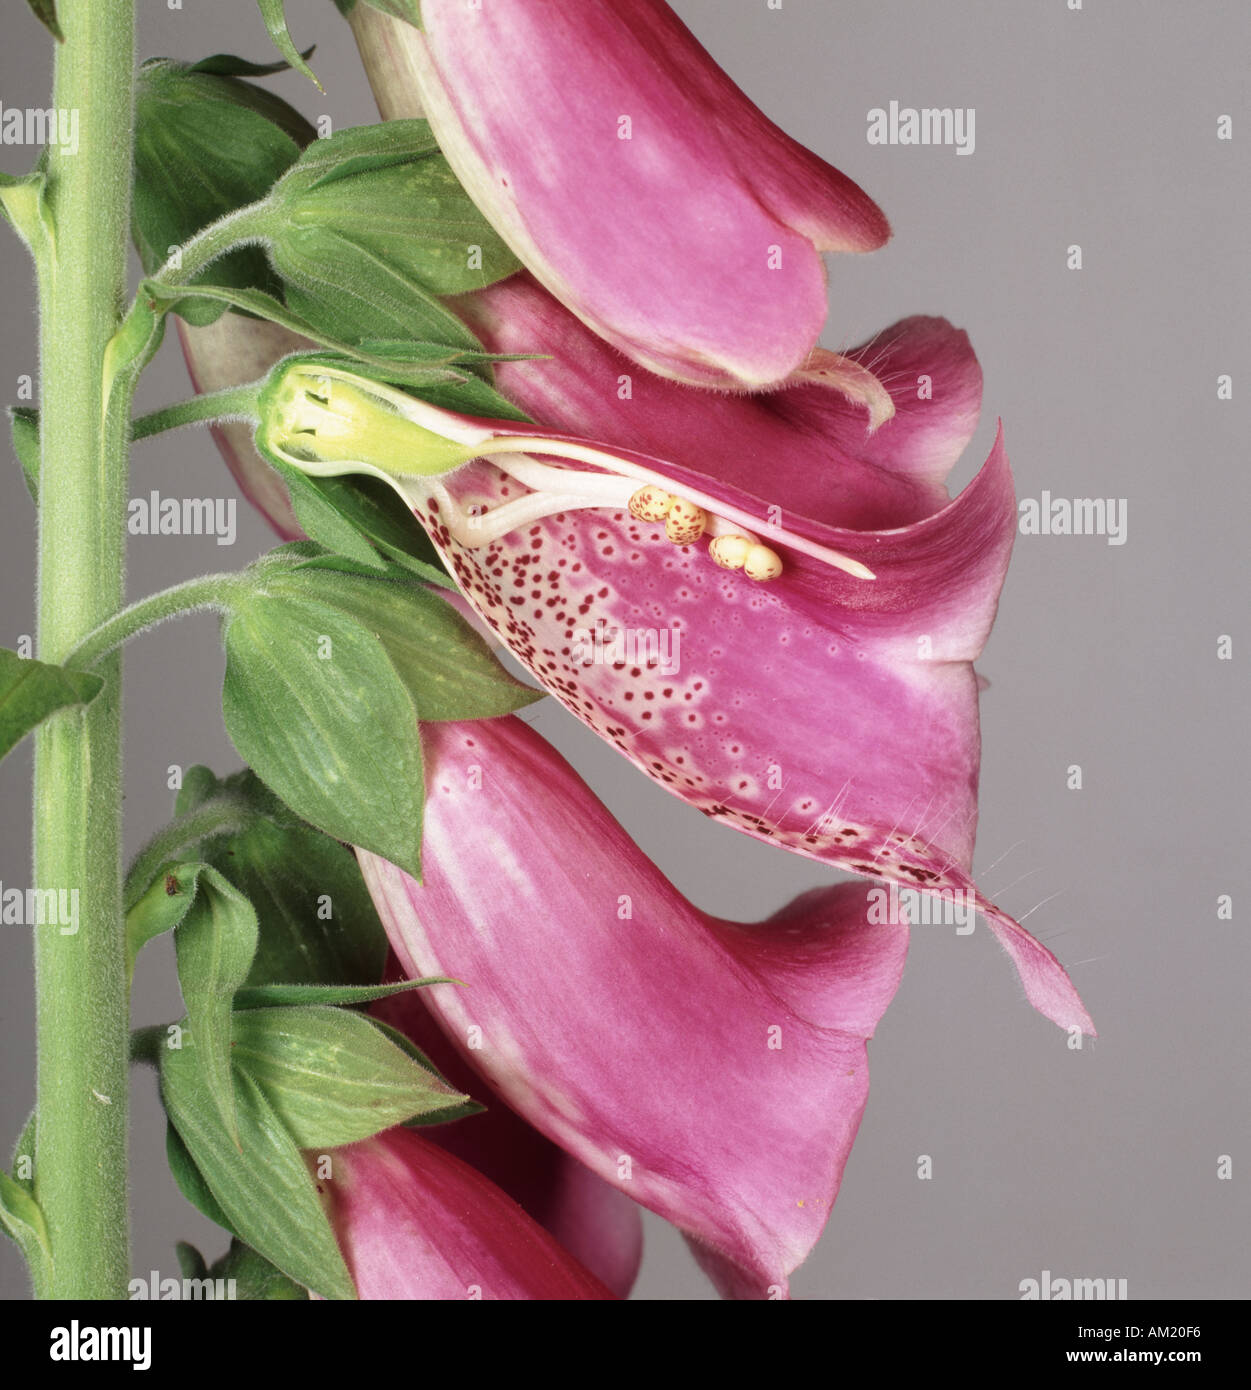 La digitale pourpre, Digitalis purpurea, fleurs une à l'article pour montrer la structure interne Banque D'Images